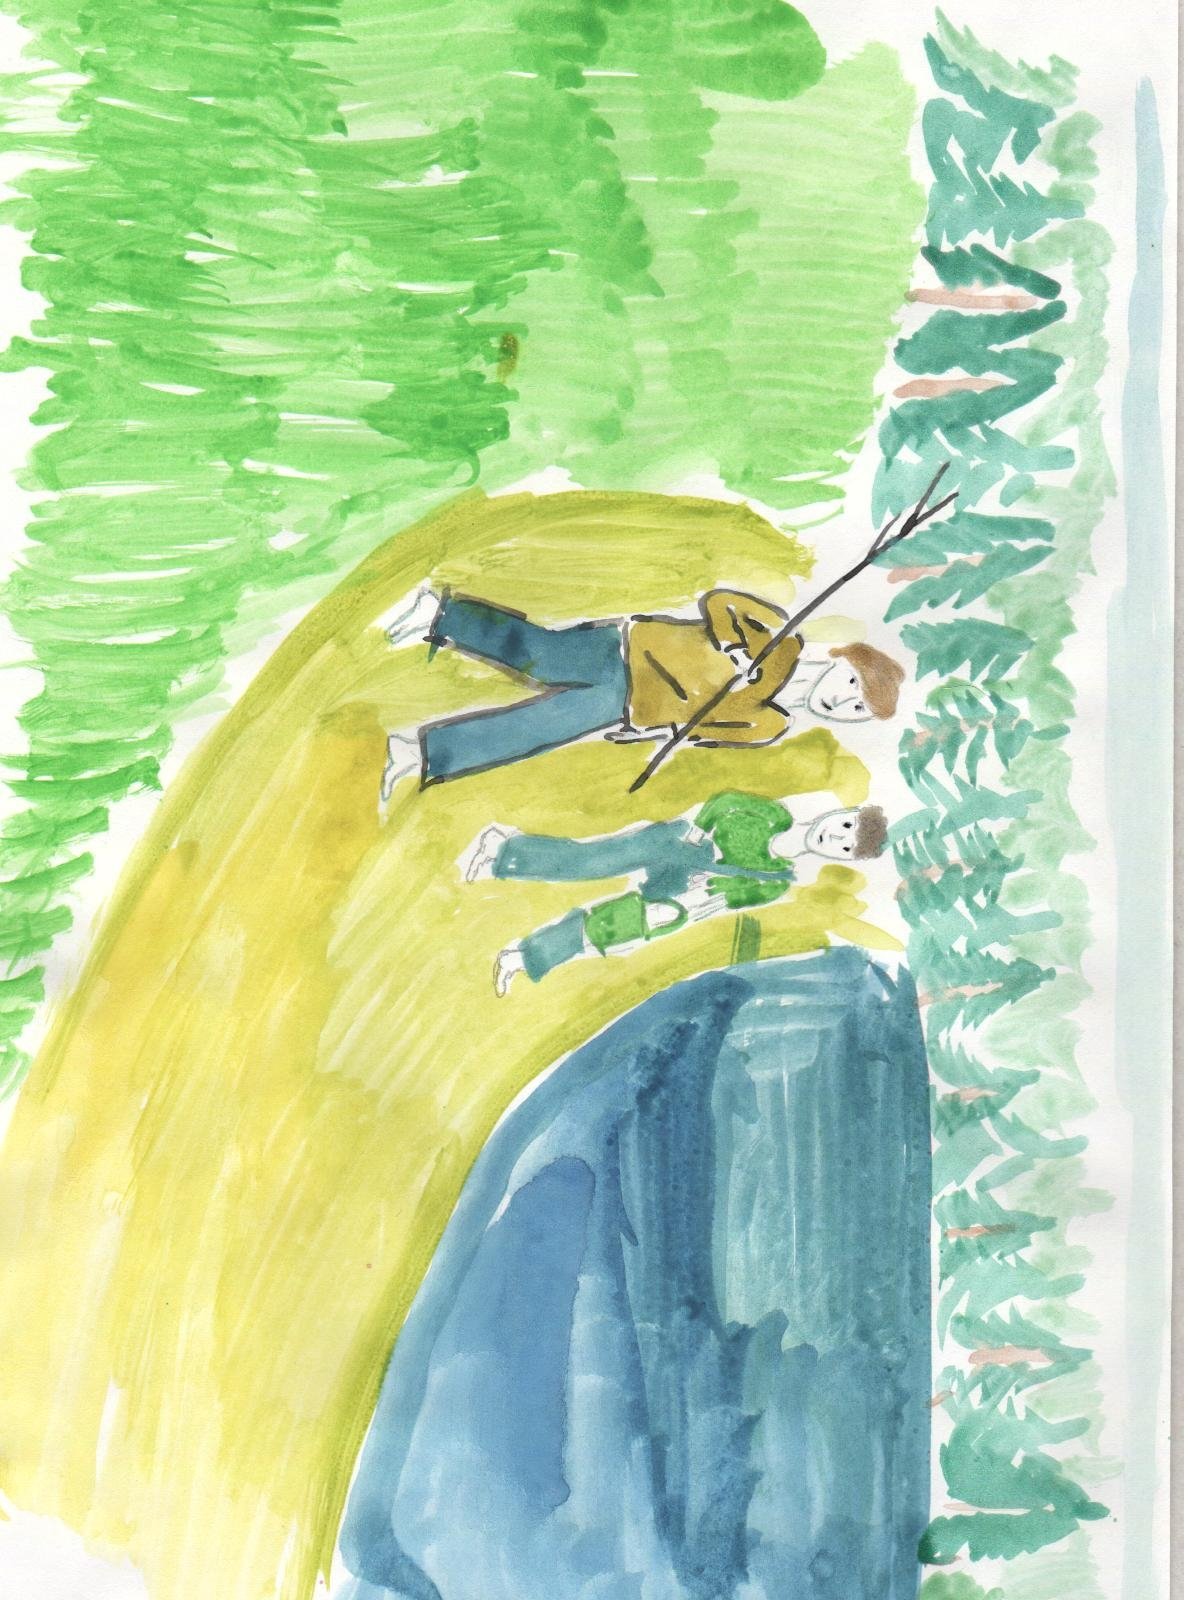 Пароход васюткино озеро. Иллюстрация к рассказу Васюткино озеро. Иллюстрация Васюткино озеро 5 класс. Иллюстрация к рассказу Васюткино озеро 5 класс карандашом. Иллюстрация к сказке Васюткино озеро 5 класс.